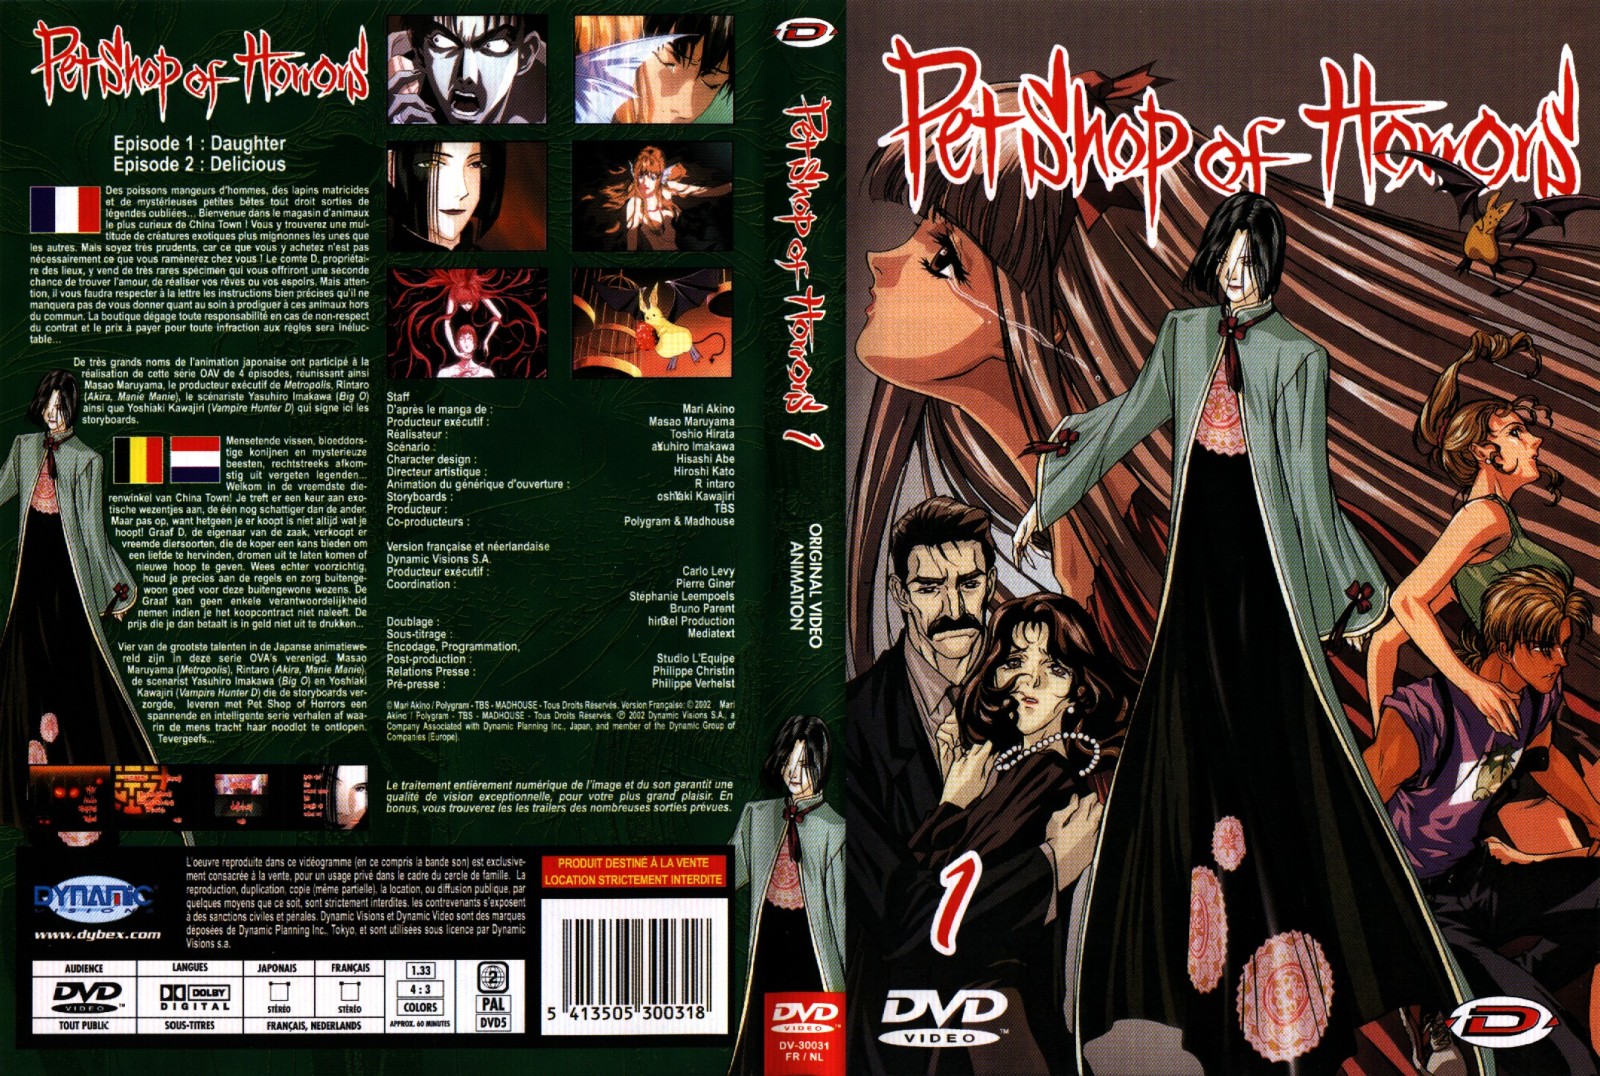 Jaquette DVD Pet shop of horrors vol 1